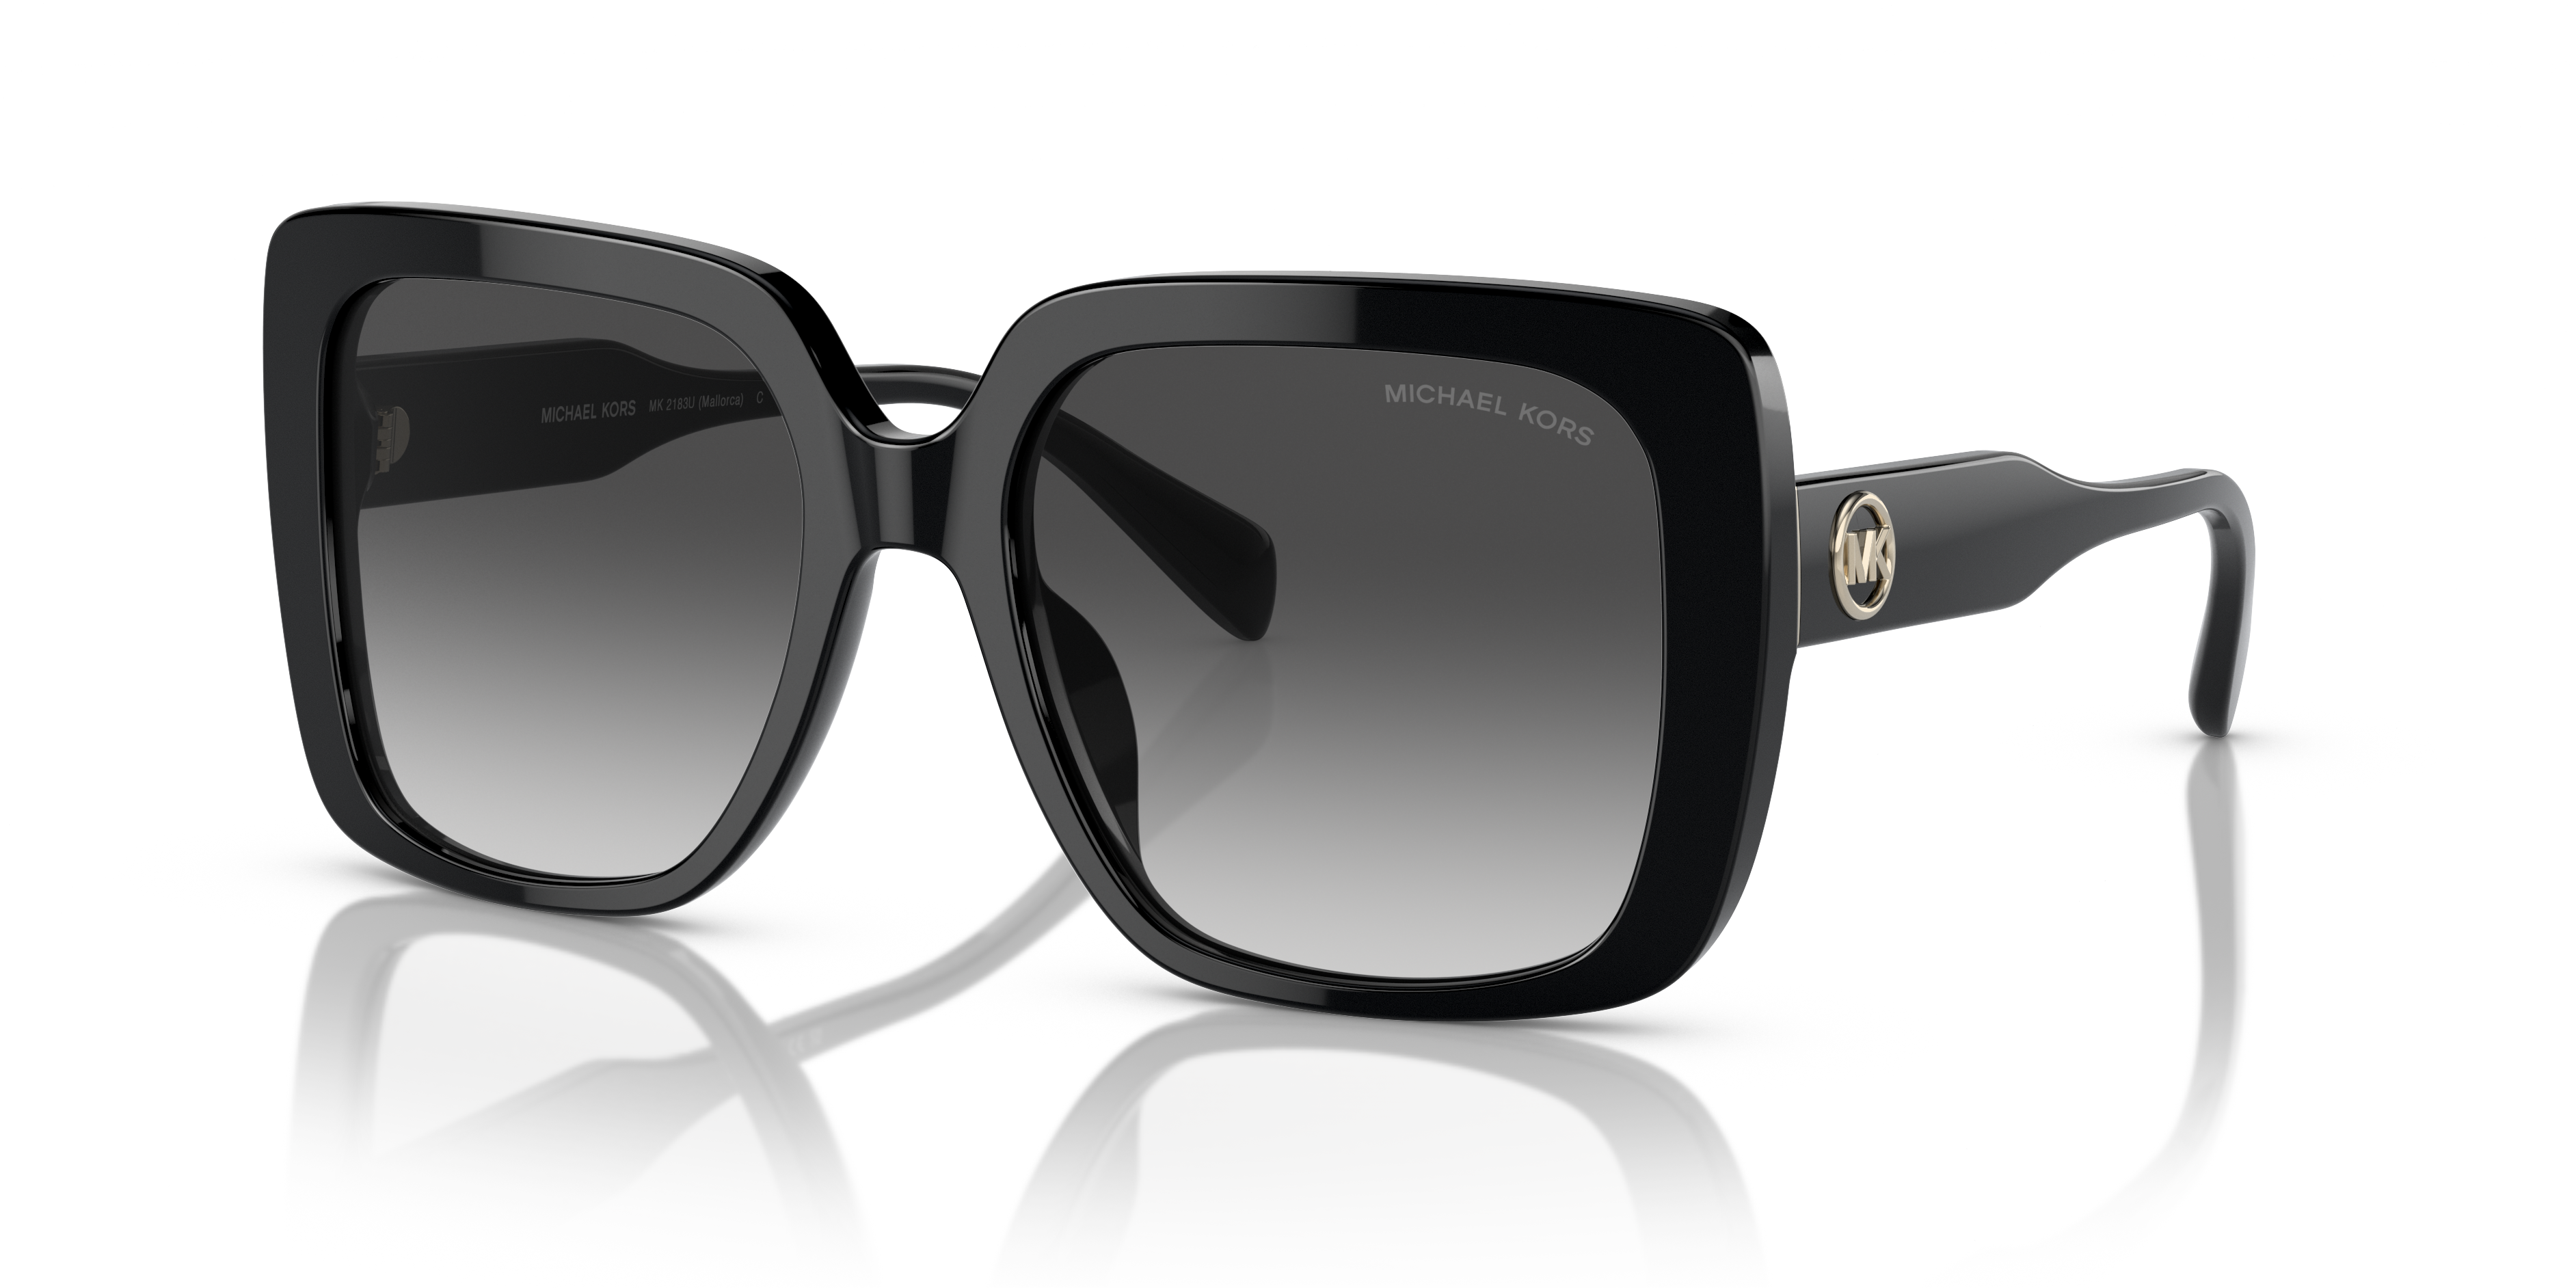 Michael Kors Black And White Sunglasses Outlet 58 OFF   wwwbridgepartnersllccom